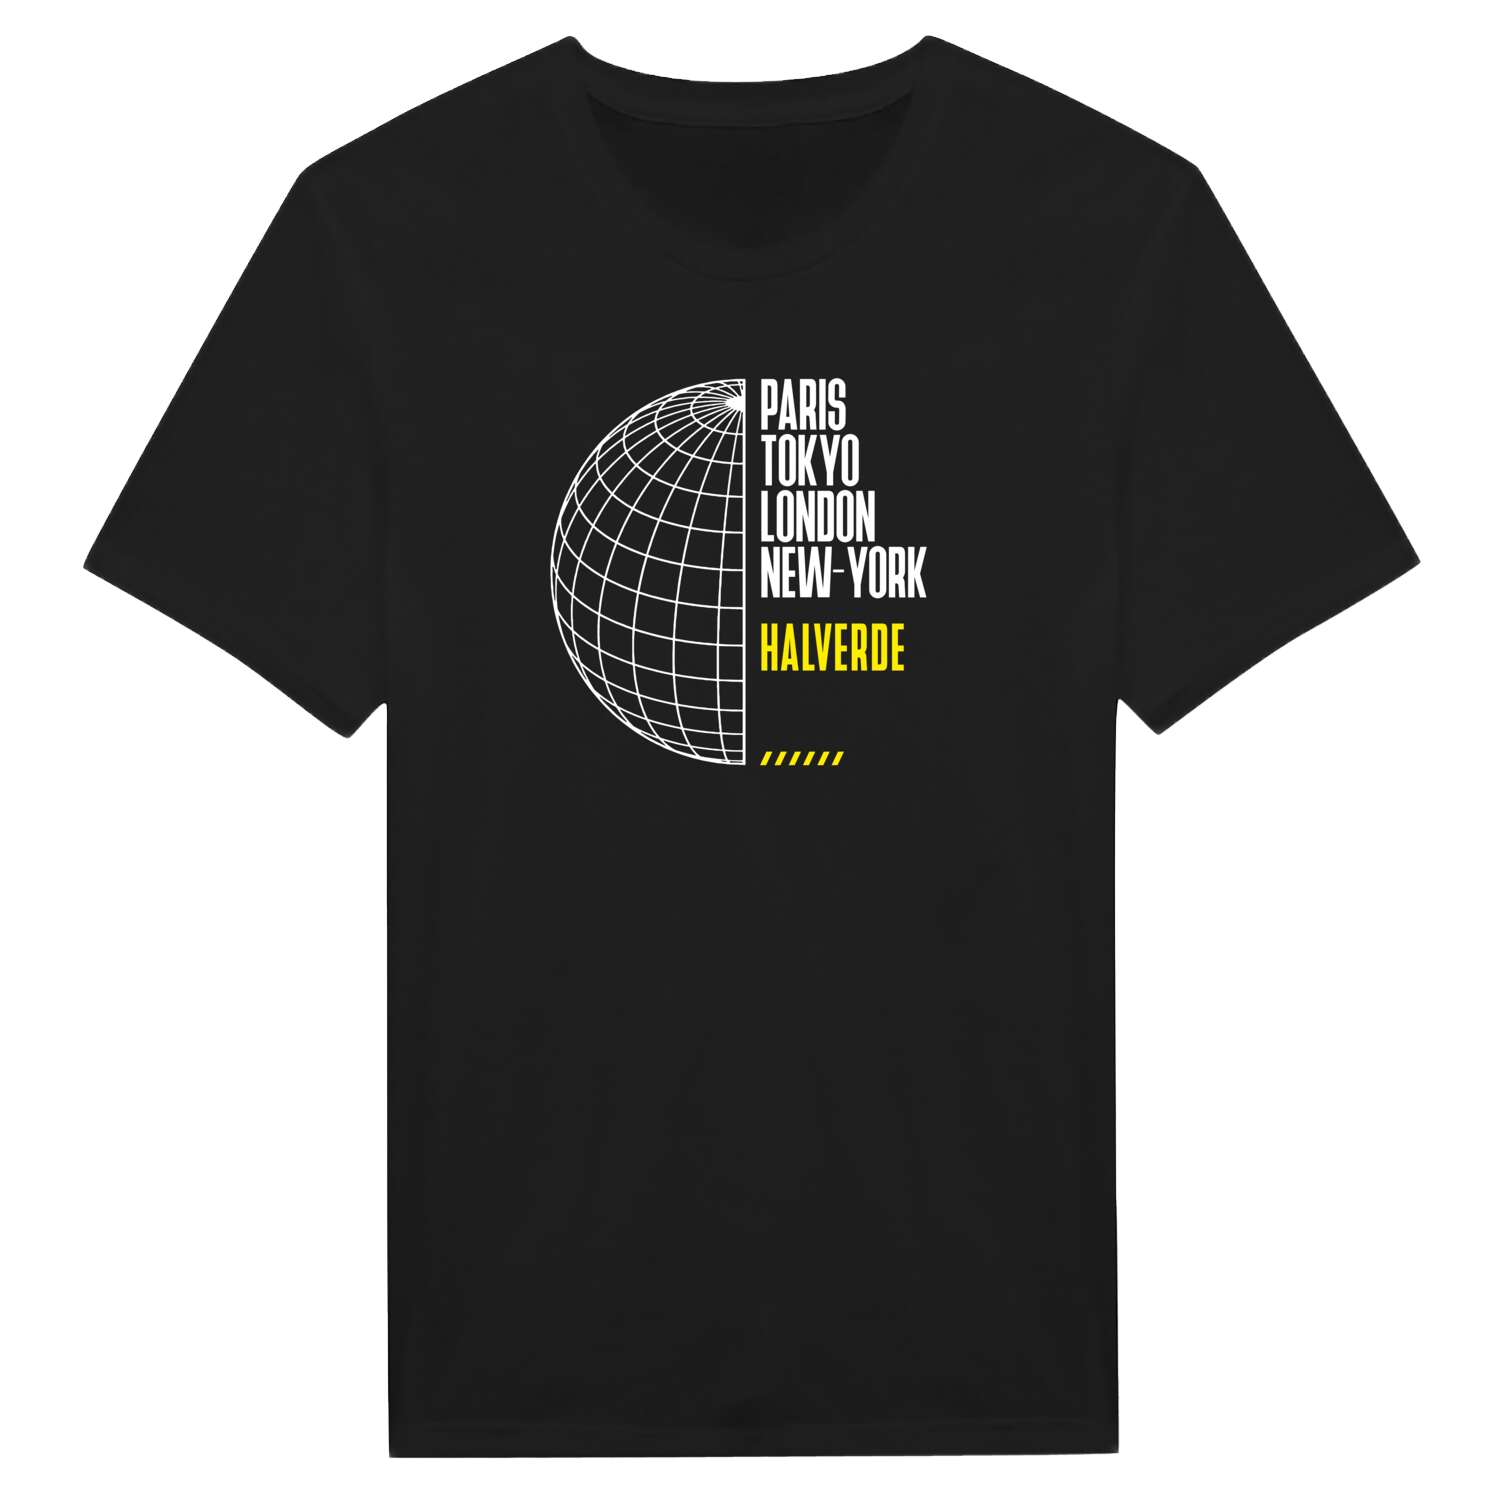 Halverde T-Shirt »Paris Tokyo London«